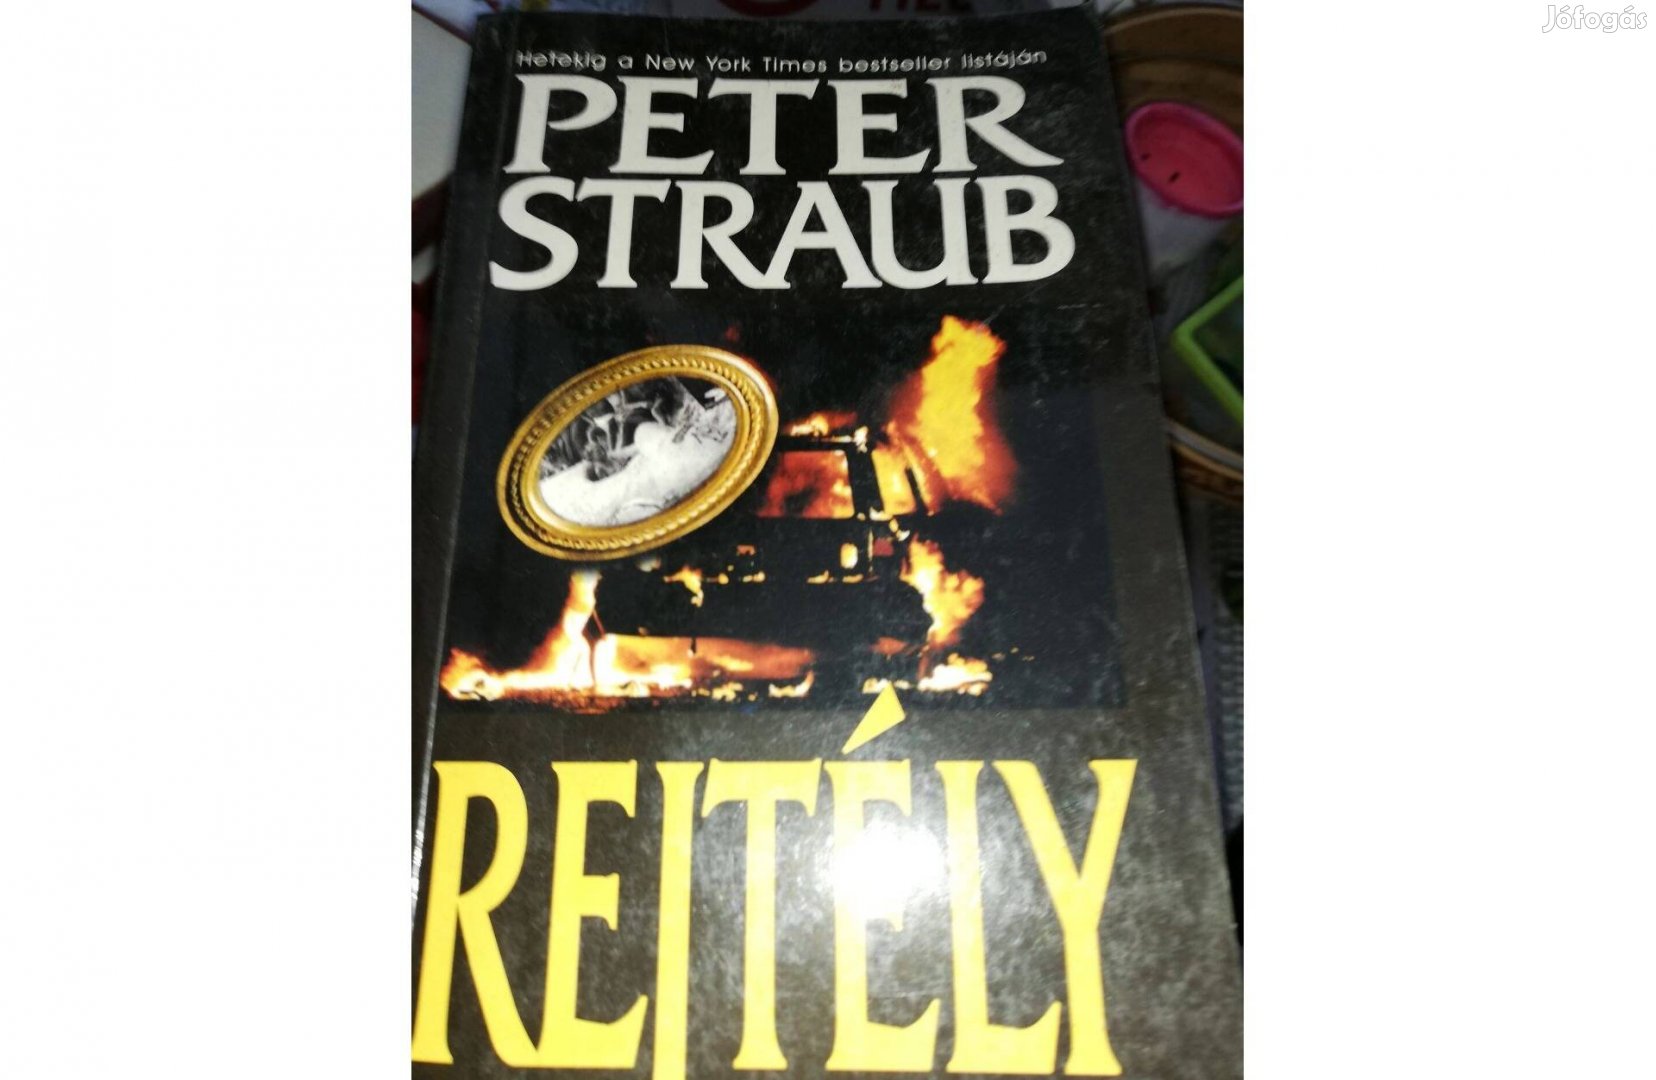 Peter Straub - Rejtély c. könyv 500 forintért eladó